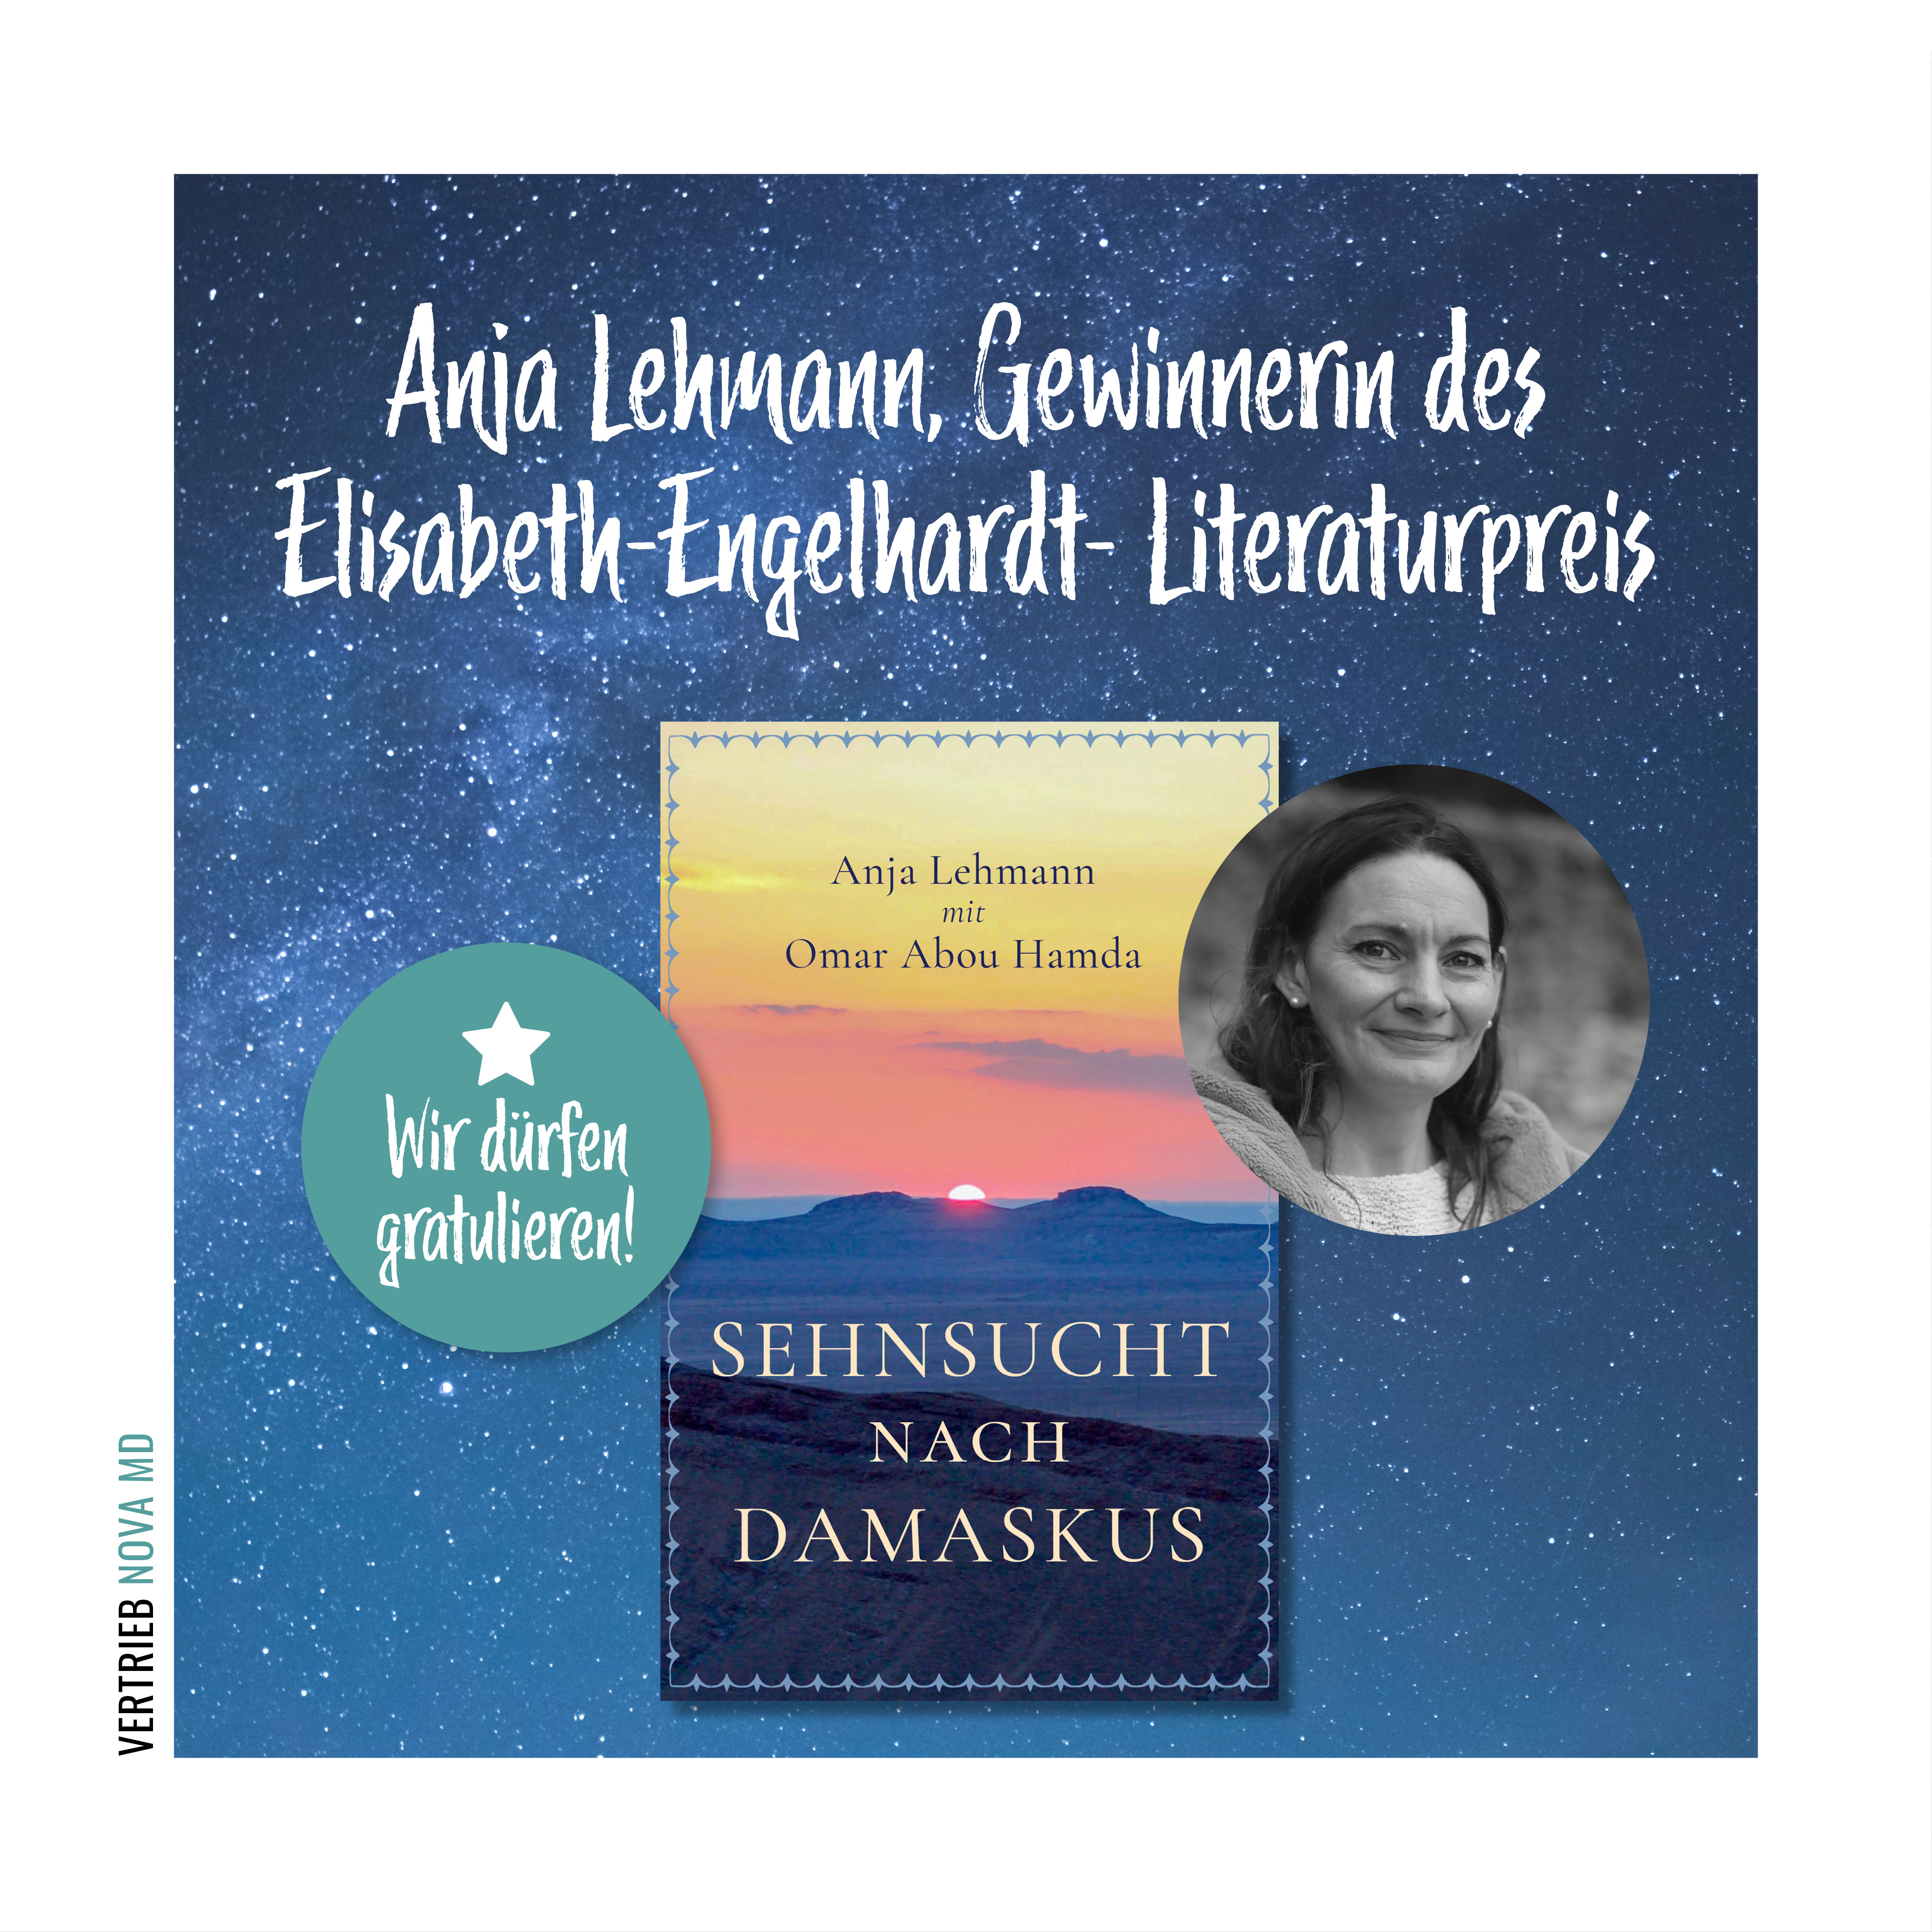 Wir gratulieren unserer Autorin Anja Lehmann zum erhalt des Elisabeth-Engelhardt-Literaturpreises 2022.